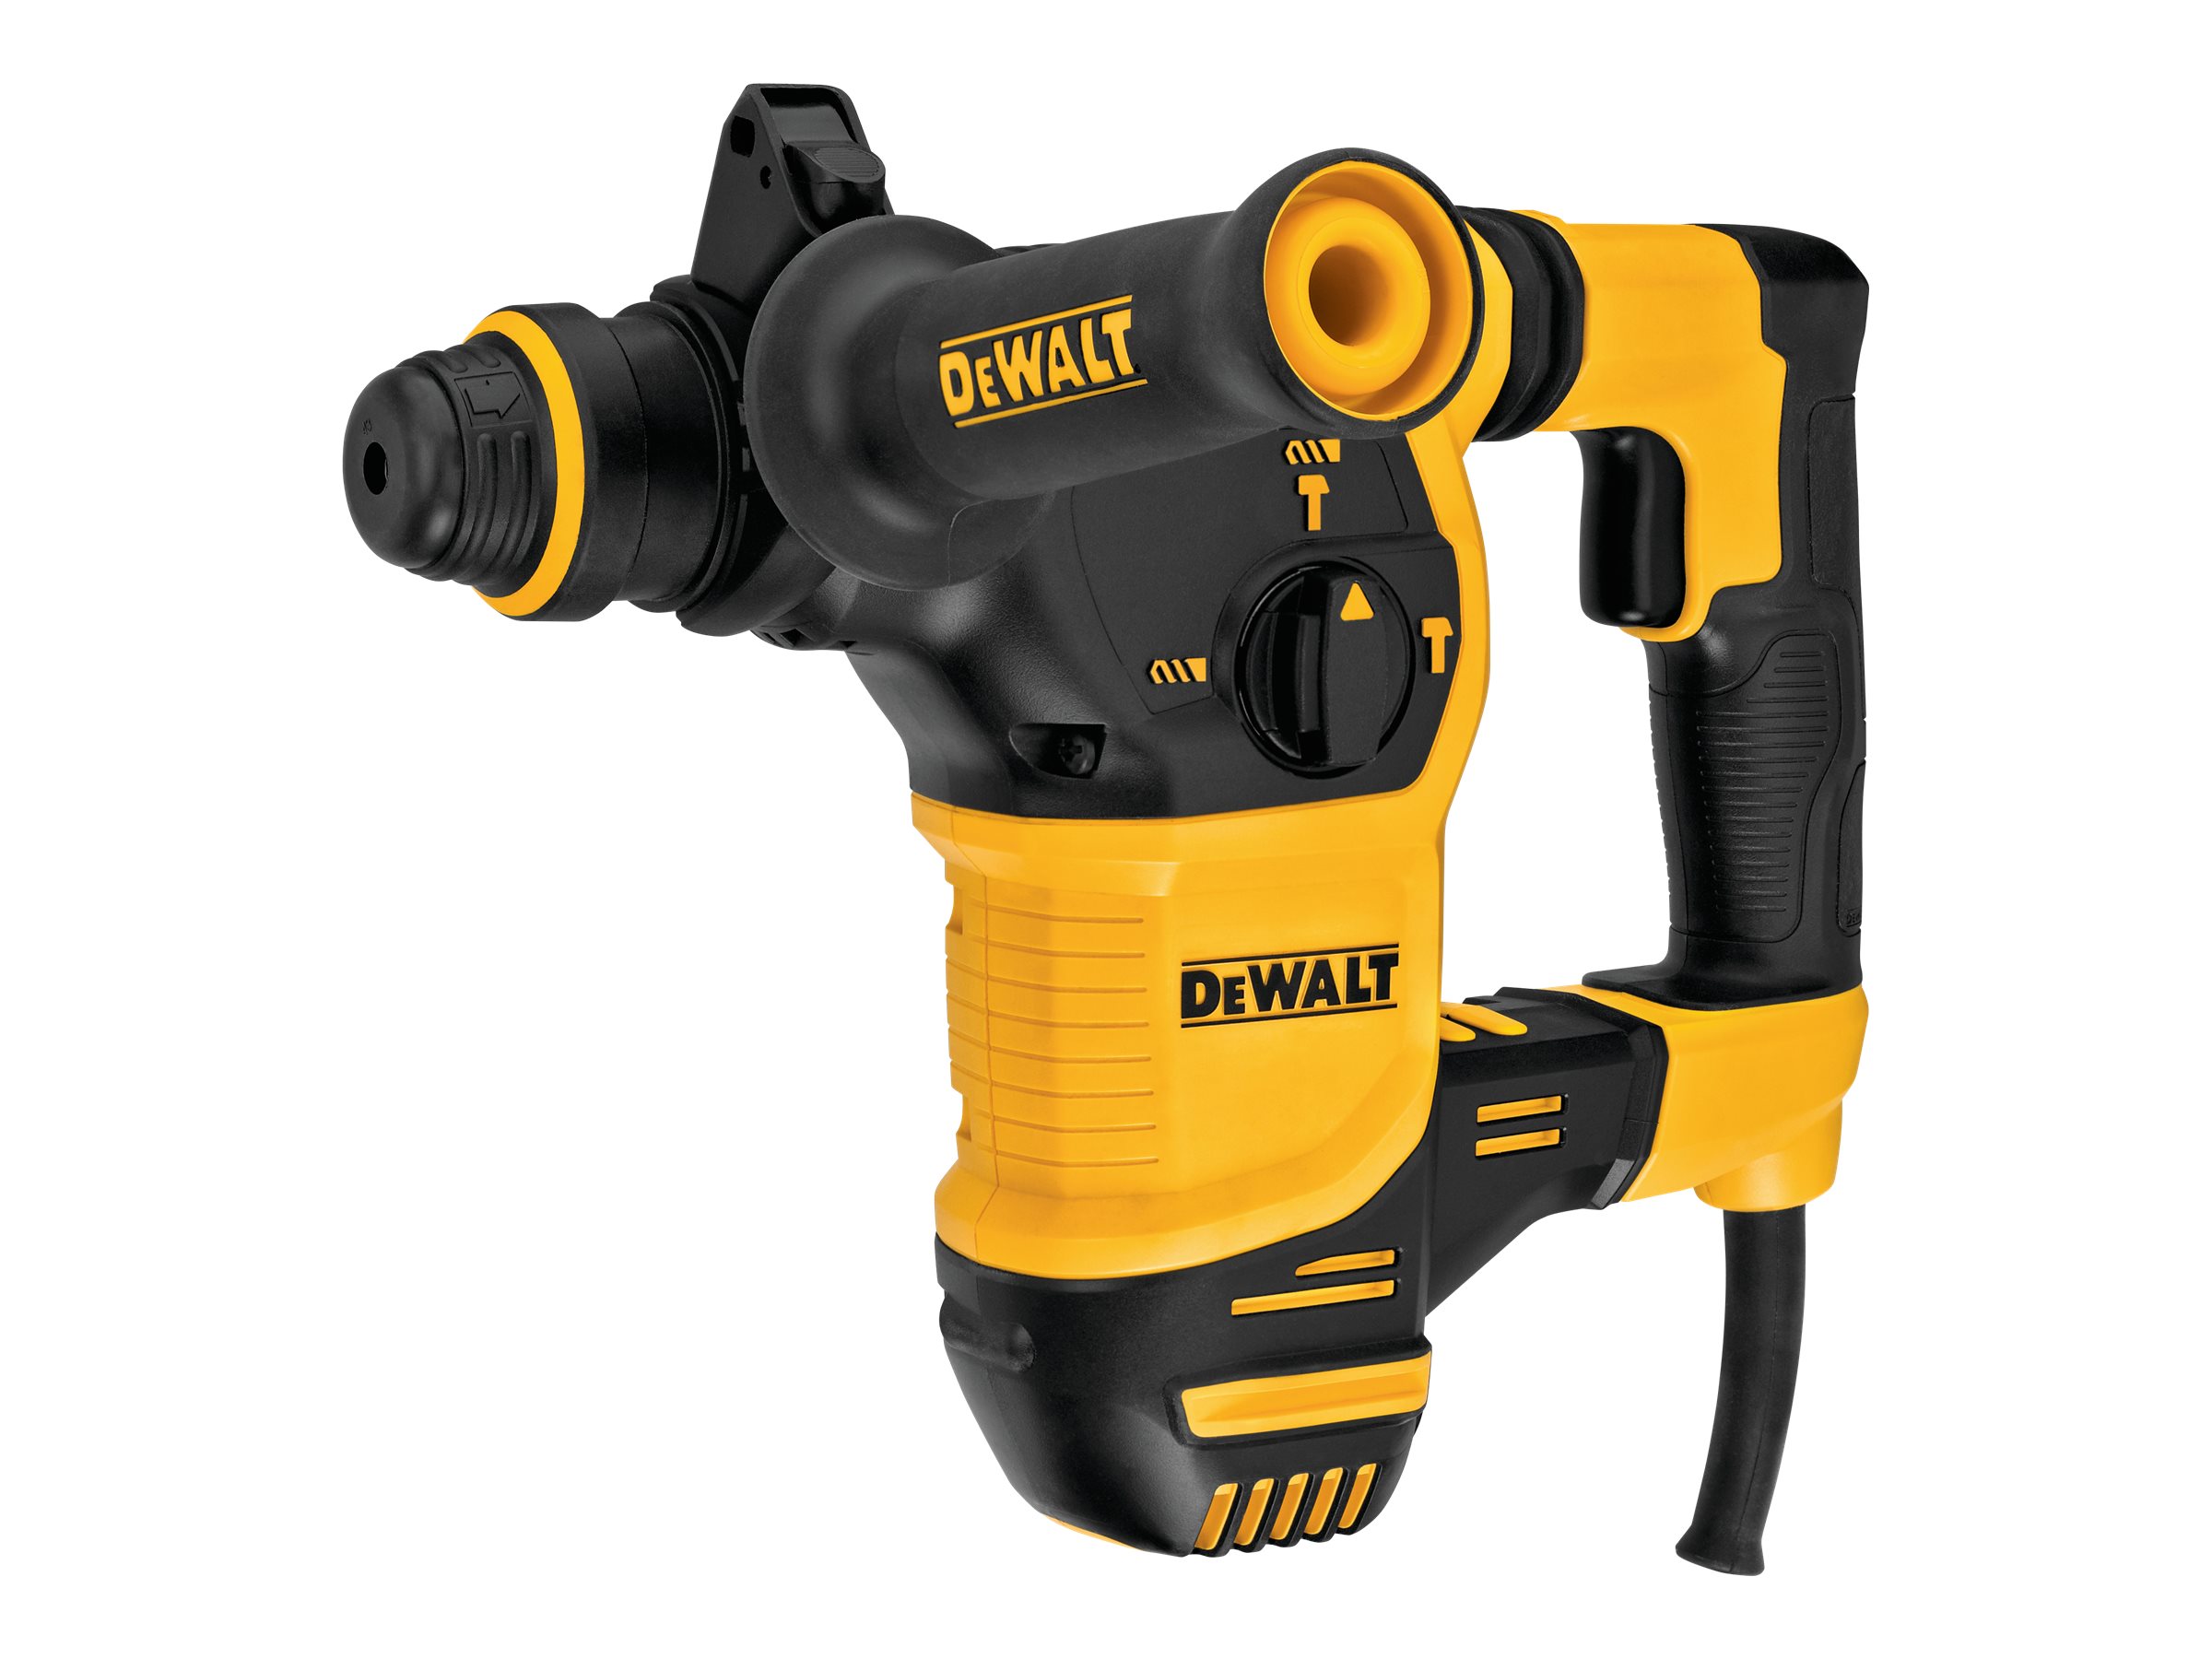 DEWALT D25333K-QS - Bohrhammer - 950 W - 3 Modi